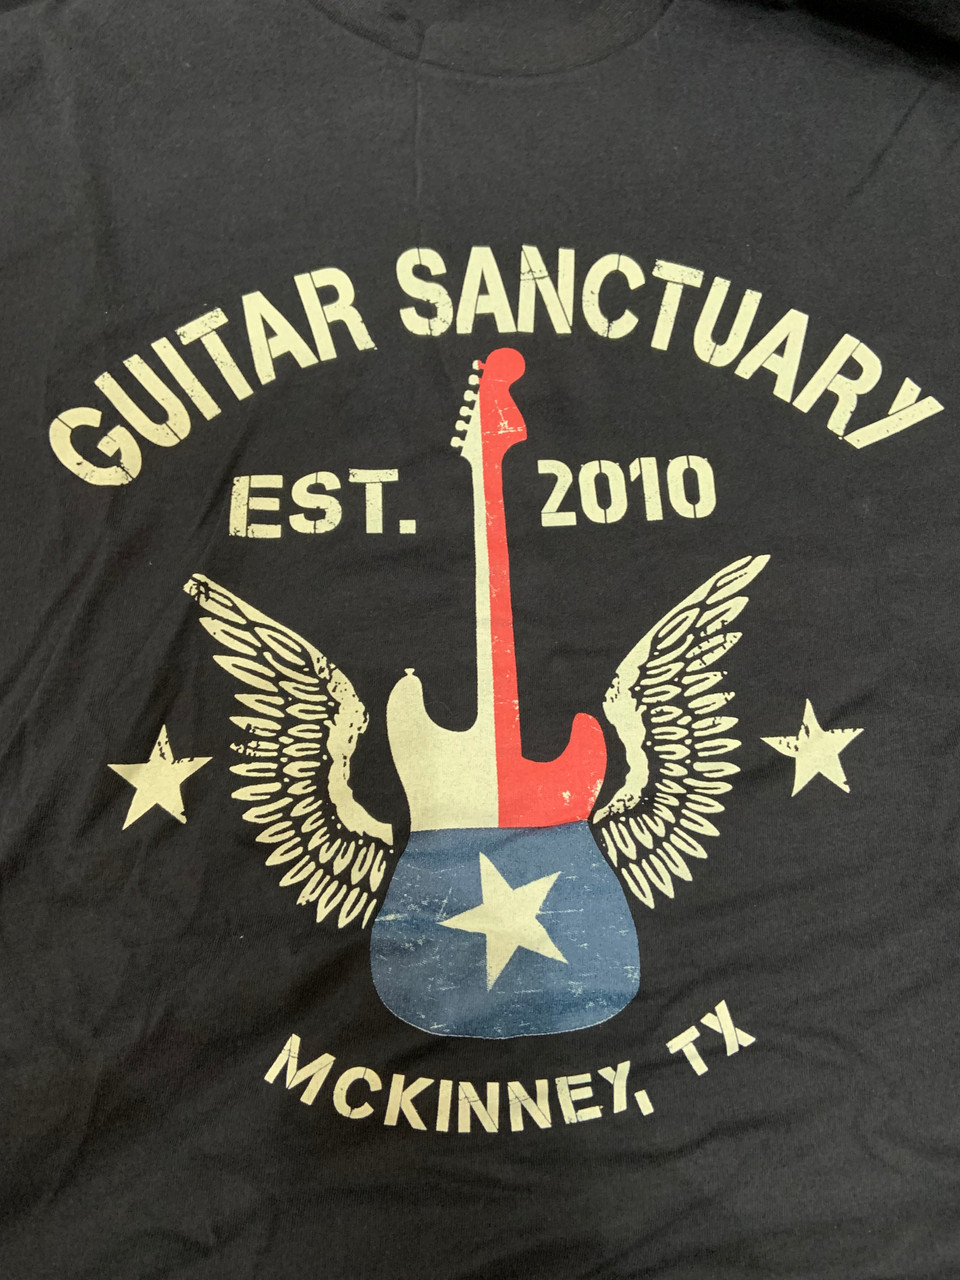 The Guitar Sanctuary Est. 2010 T-Shirt